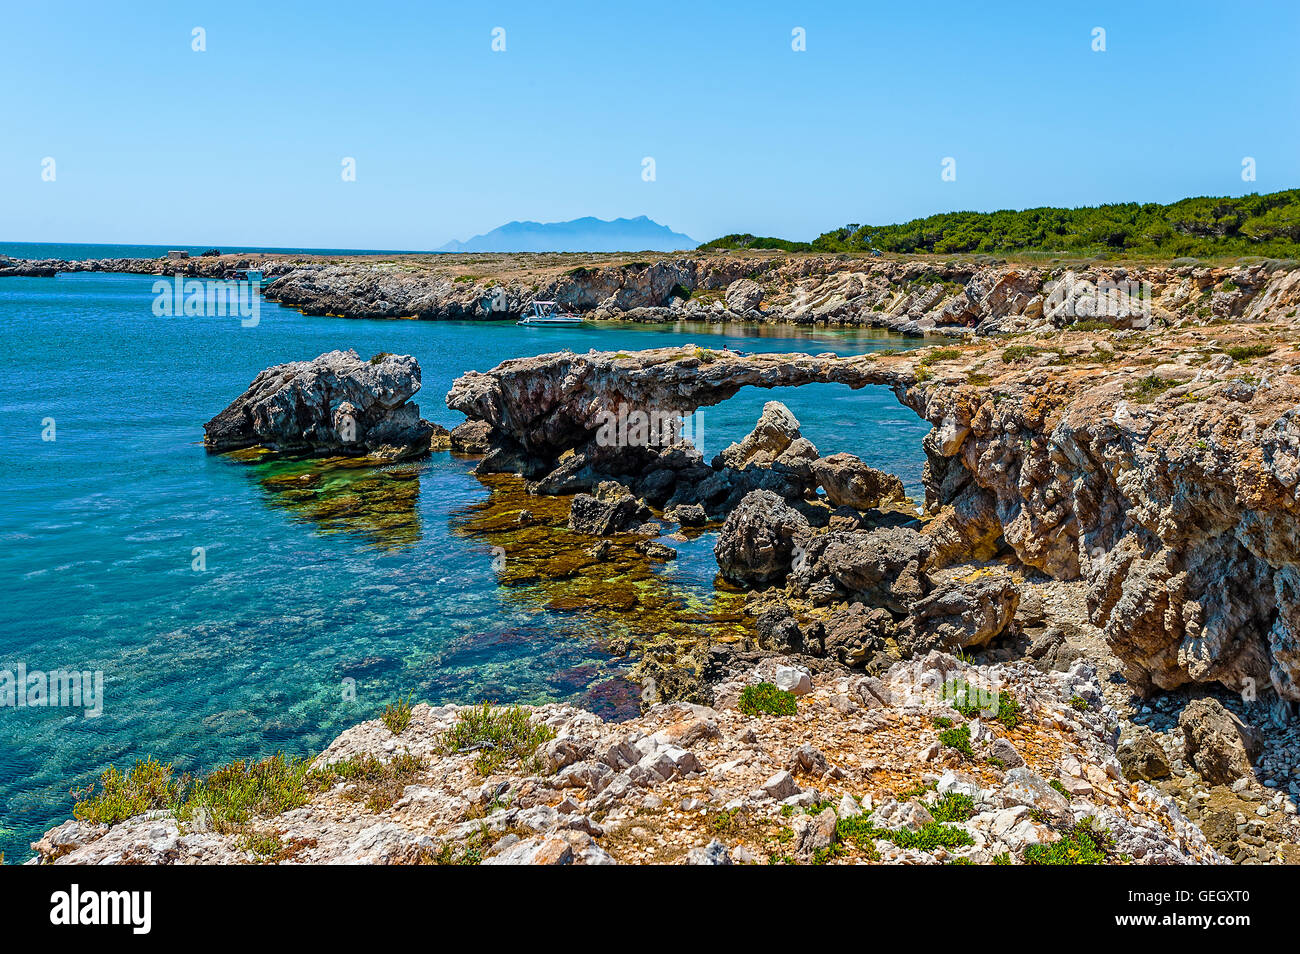 Italia Sicilia Isole Egadi Favignana - Cala Rotonda beach Foto stock - Alamy